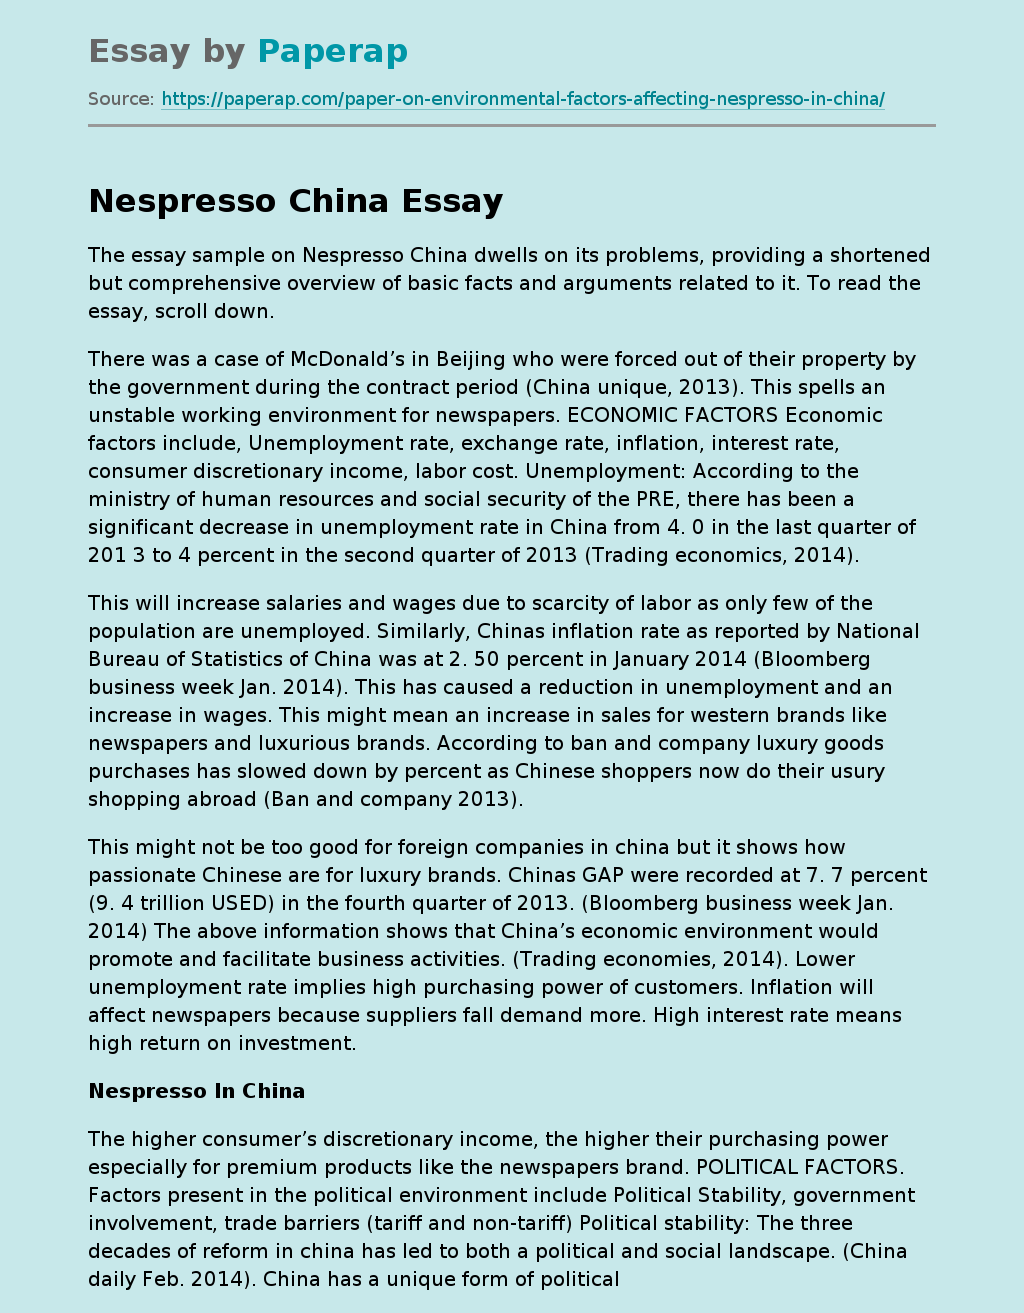 Essay Sample on Nespresso China